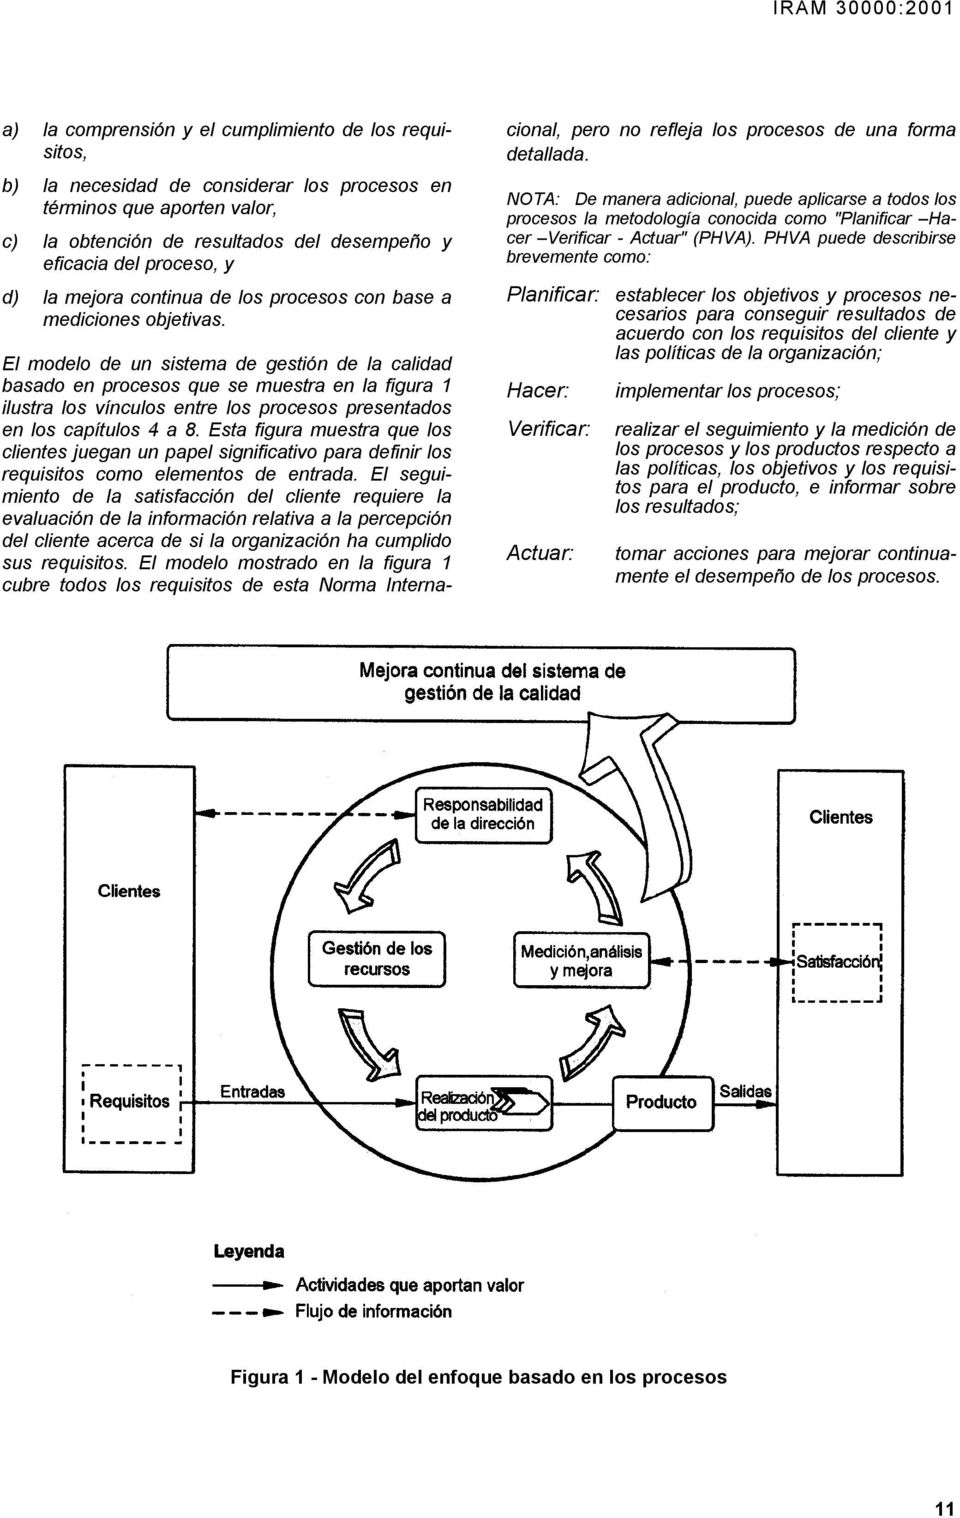 El modelo de un sistema de gestión de la calidad basado en procesos que se muestra en la figura 1 ilustra los vínculos entre los procesos presentados en los capítulos 4 a 8.